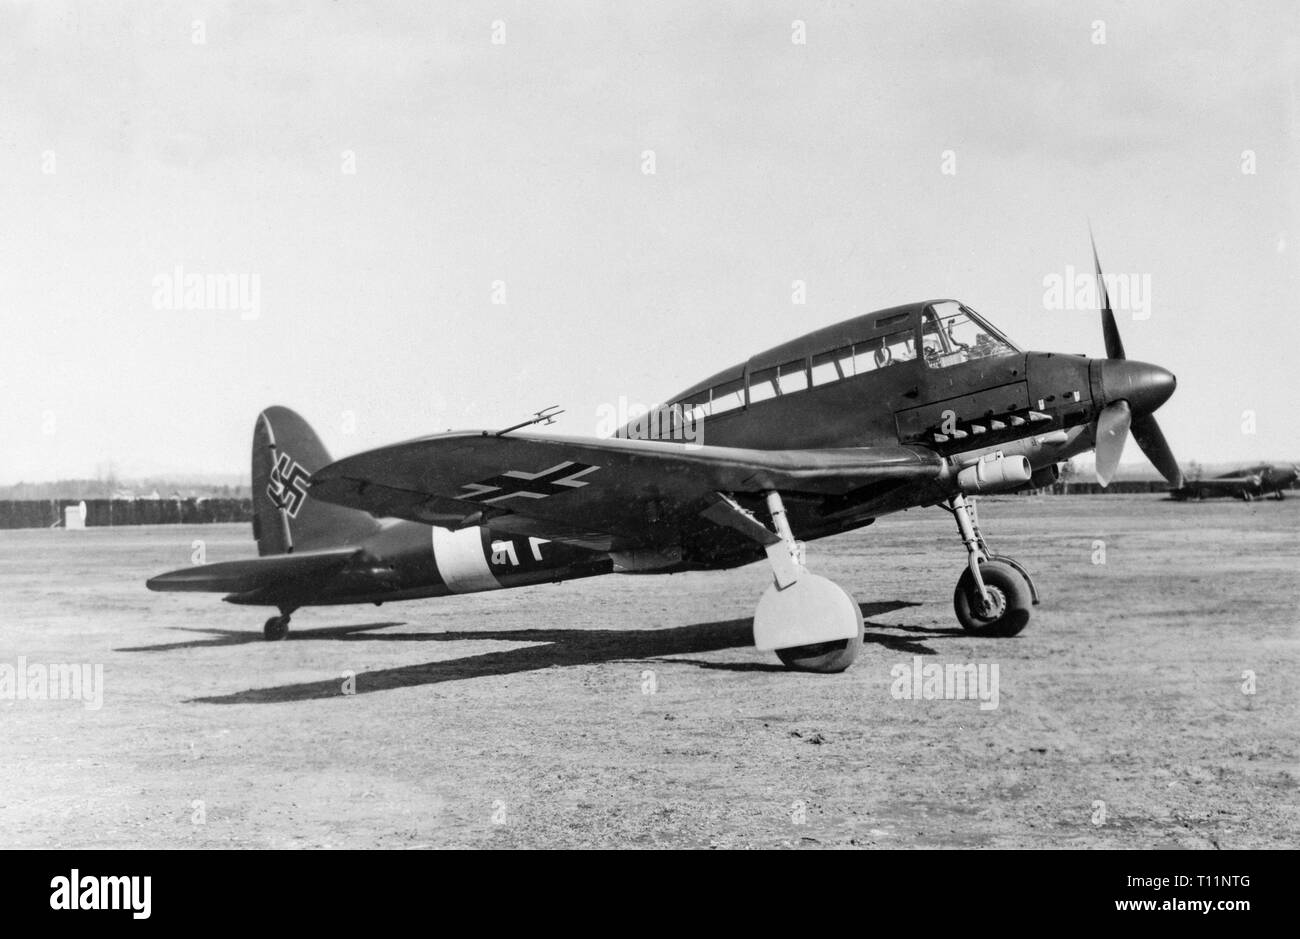 Die Savoia-Marchetti SM 93 Fighter Sturzbomber, entworfen von Alessandro Marchetti und zum ersten Mal am 31. Januar 1944 in Varese geflogen. Aus Holz gebaut, für die Deutsche Luftwaffe. Nur ein Beispiel, das jemals gebaut wurde. Stockfoto